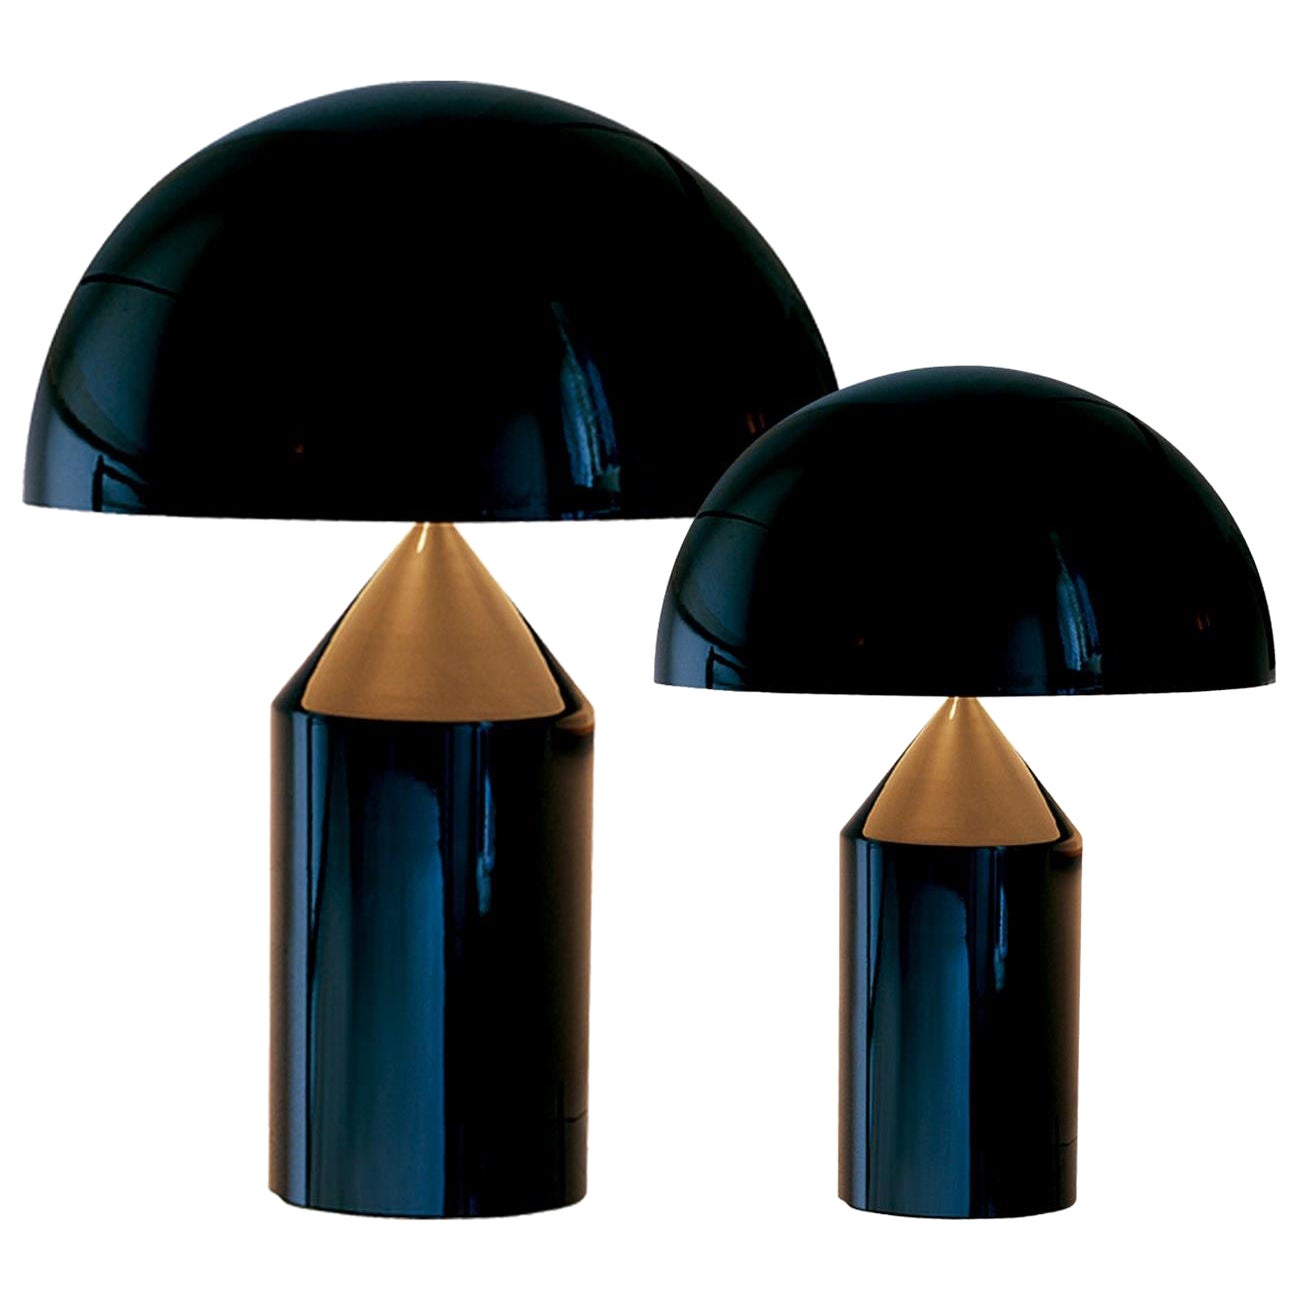 Ensemble de grandes et moyennes lampes de bureau noires « Atollo » conçues par Vico Magistretti